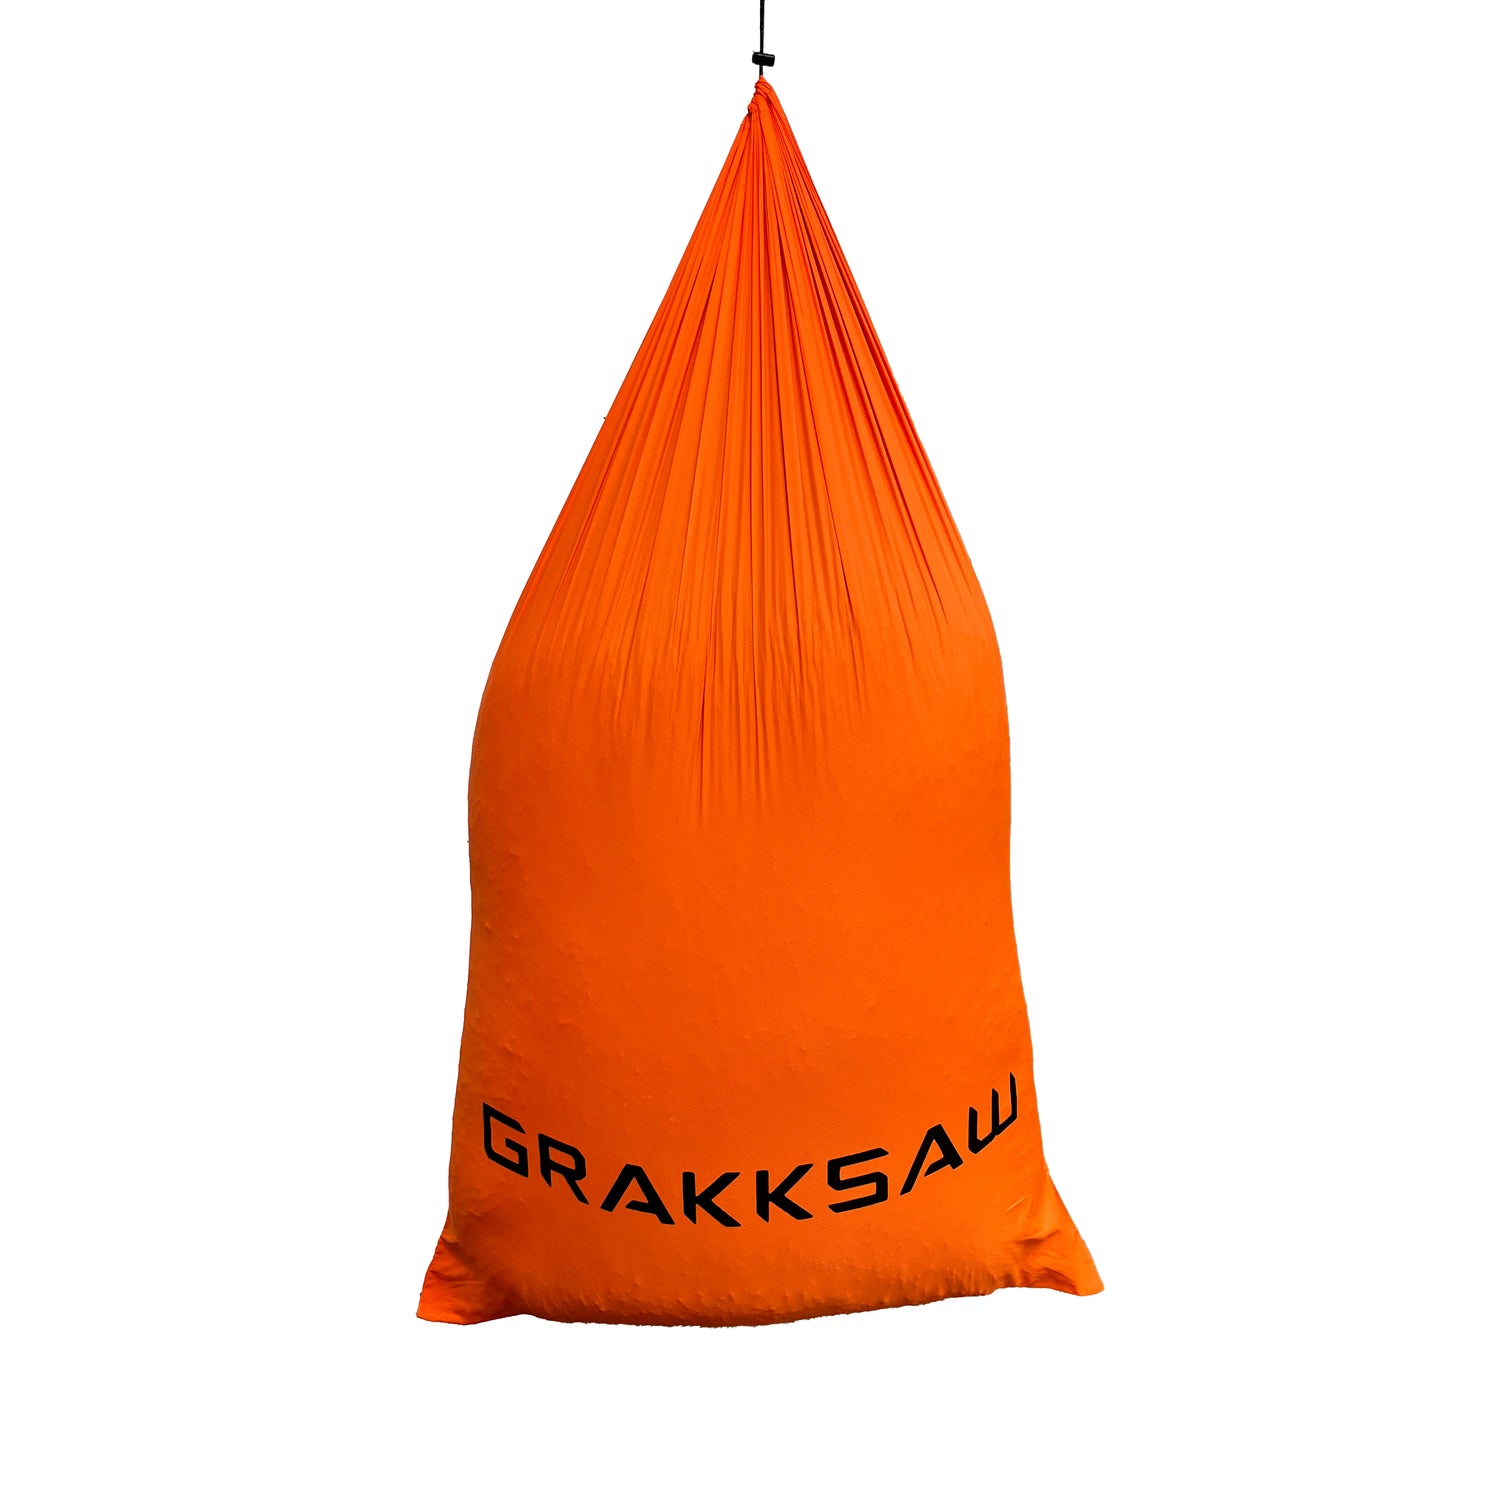 Grakksaw Moose Game Bags in  by GOHUNT | Grakksaw - GOHUNT Shop